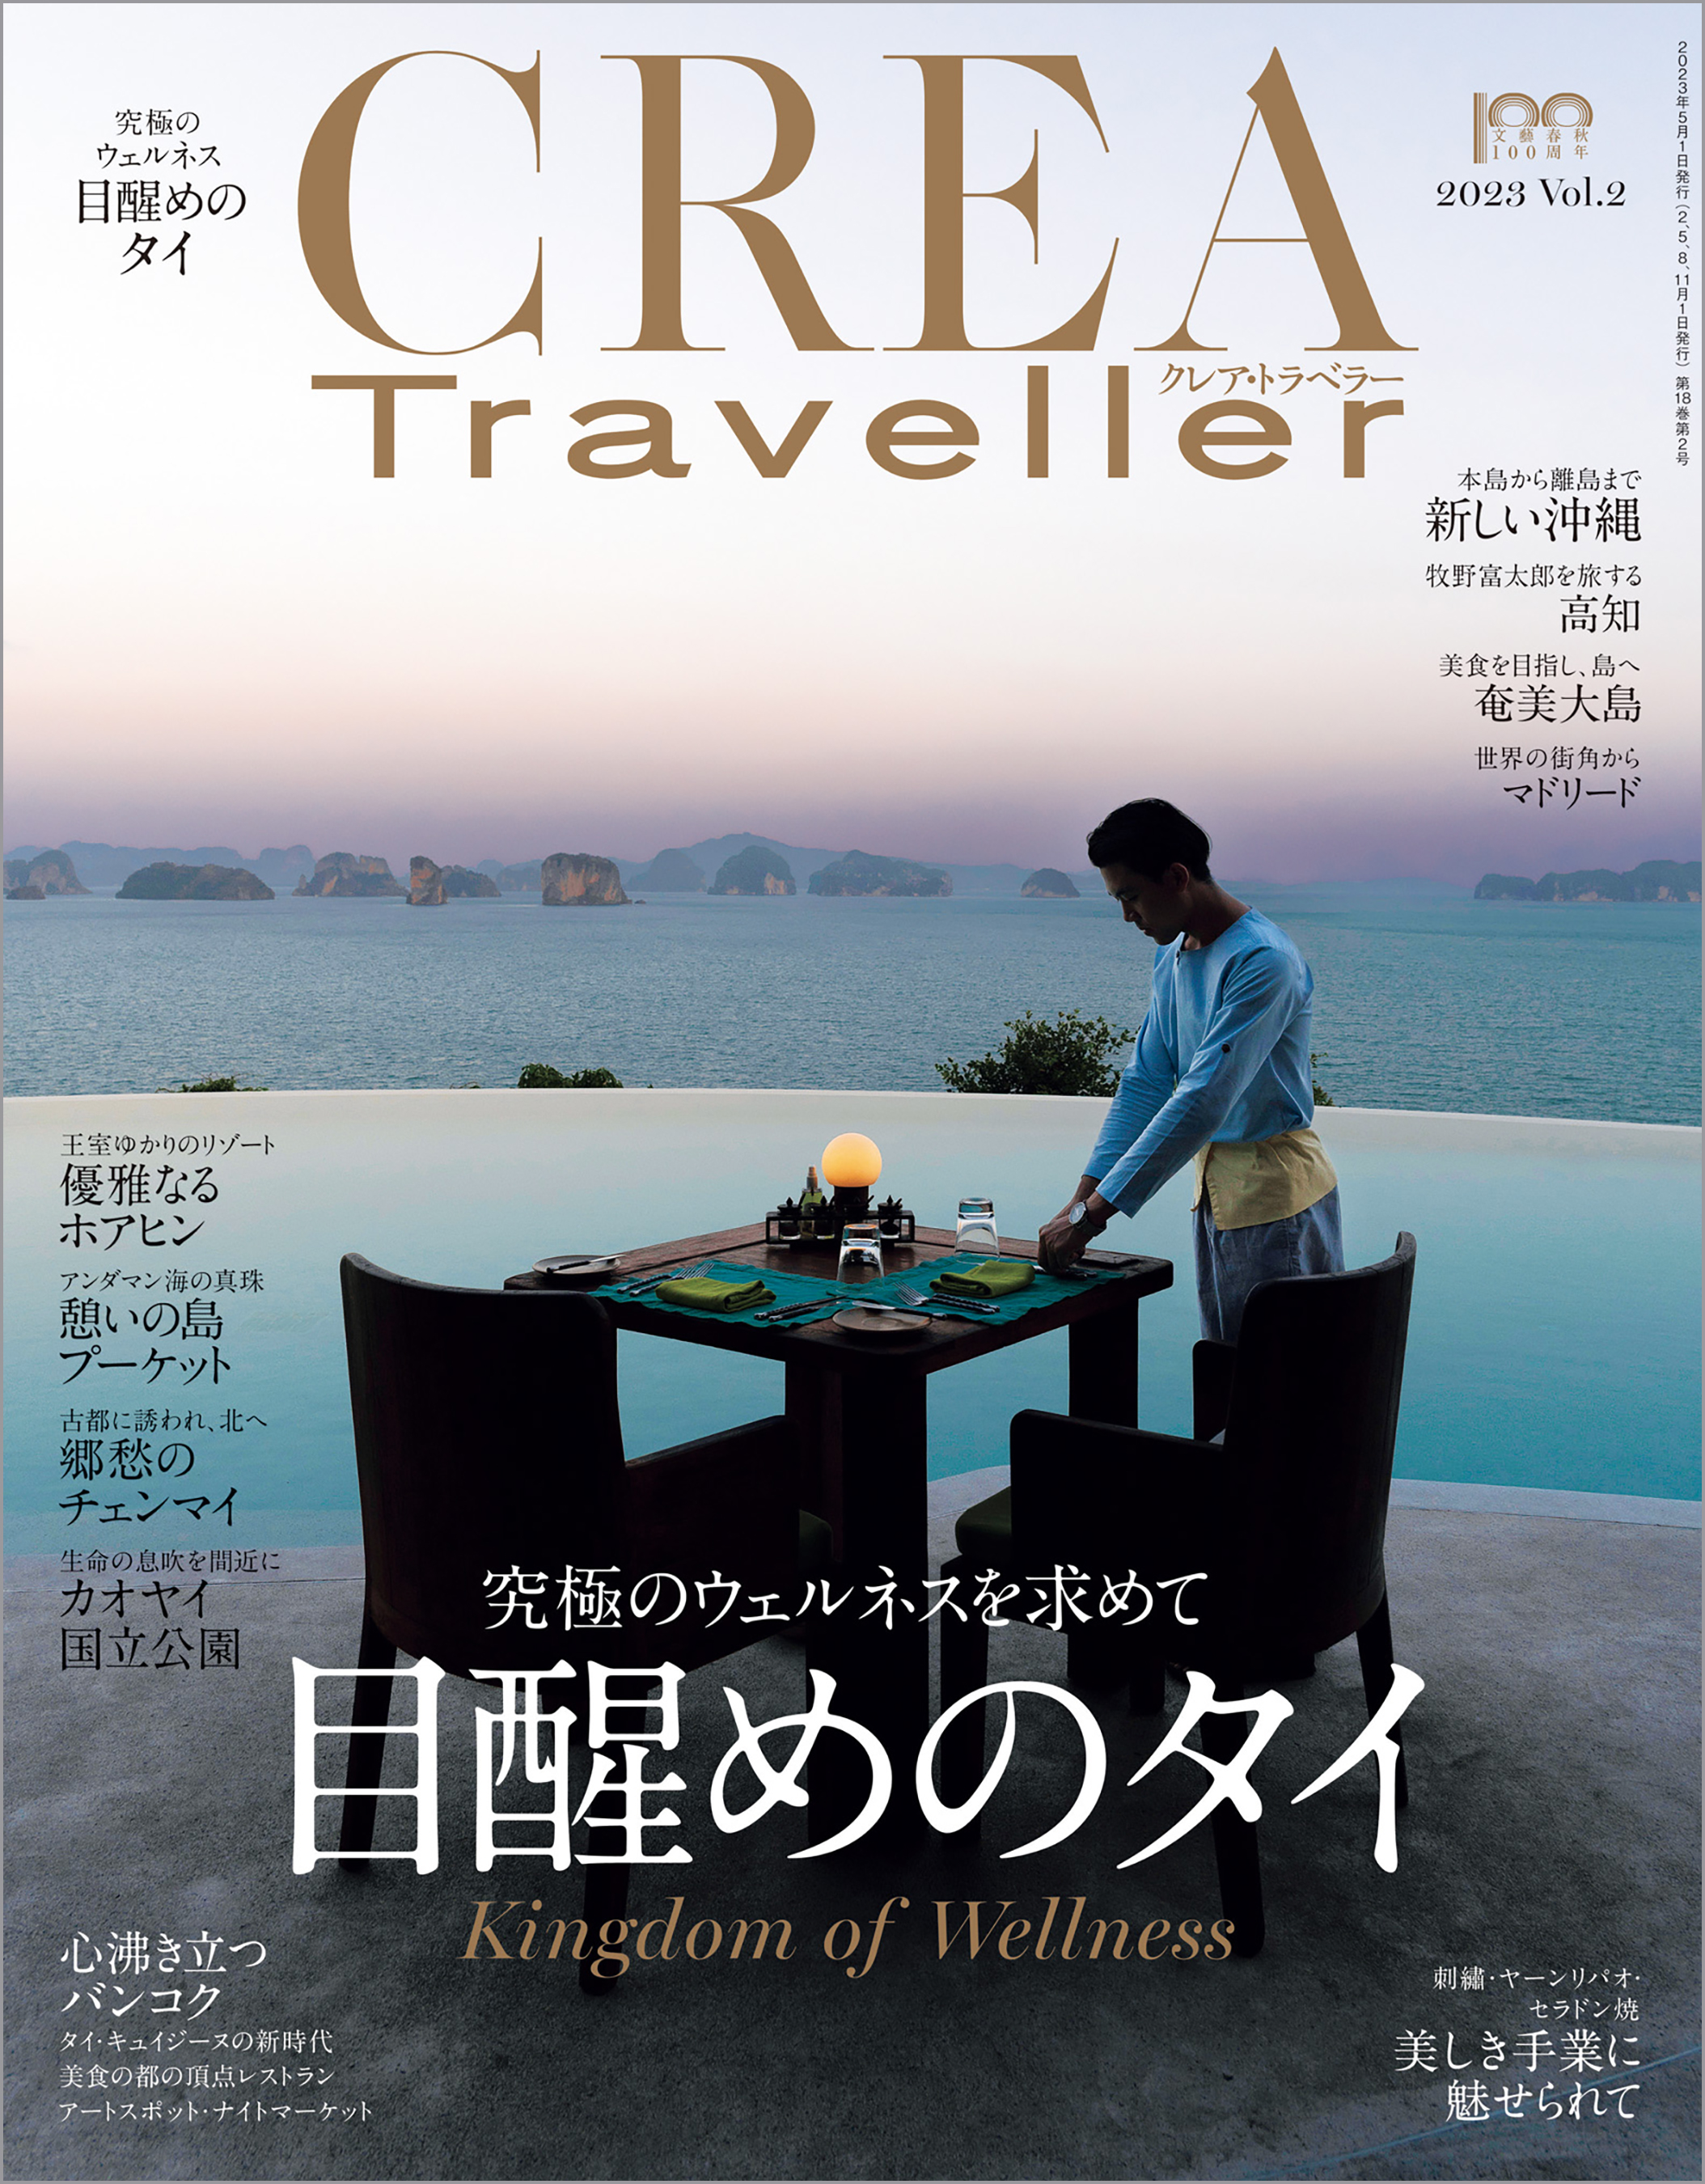 CREA Traveller 2023 Vol.2 (目醒めのタイ) - CREA Traveller編集部 -  雑誌・無料試し読みなら、電子書籍・コミックストア ブックライブ